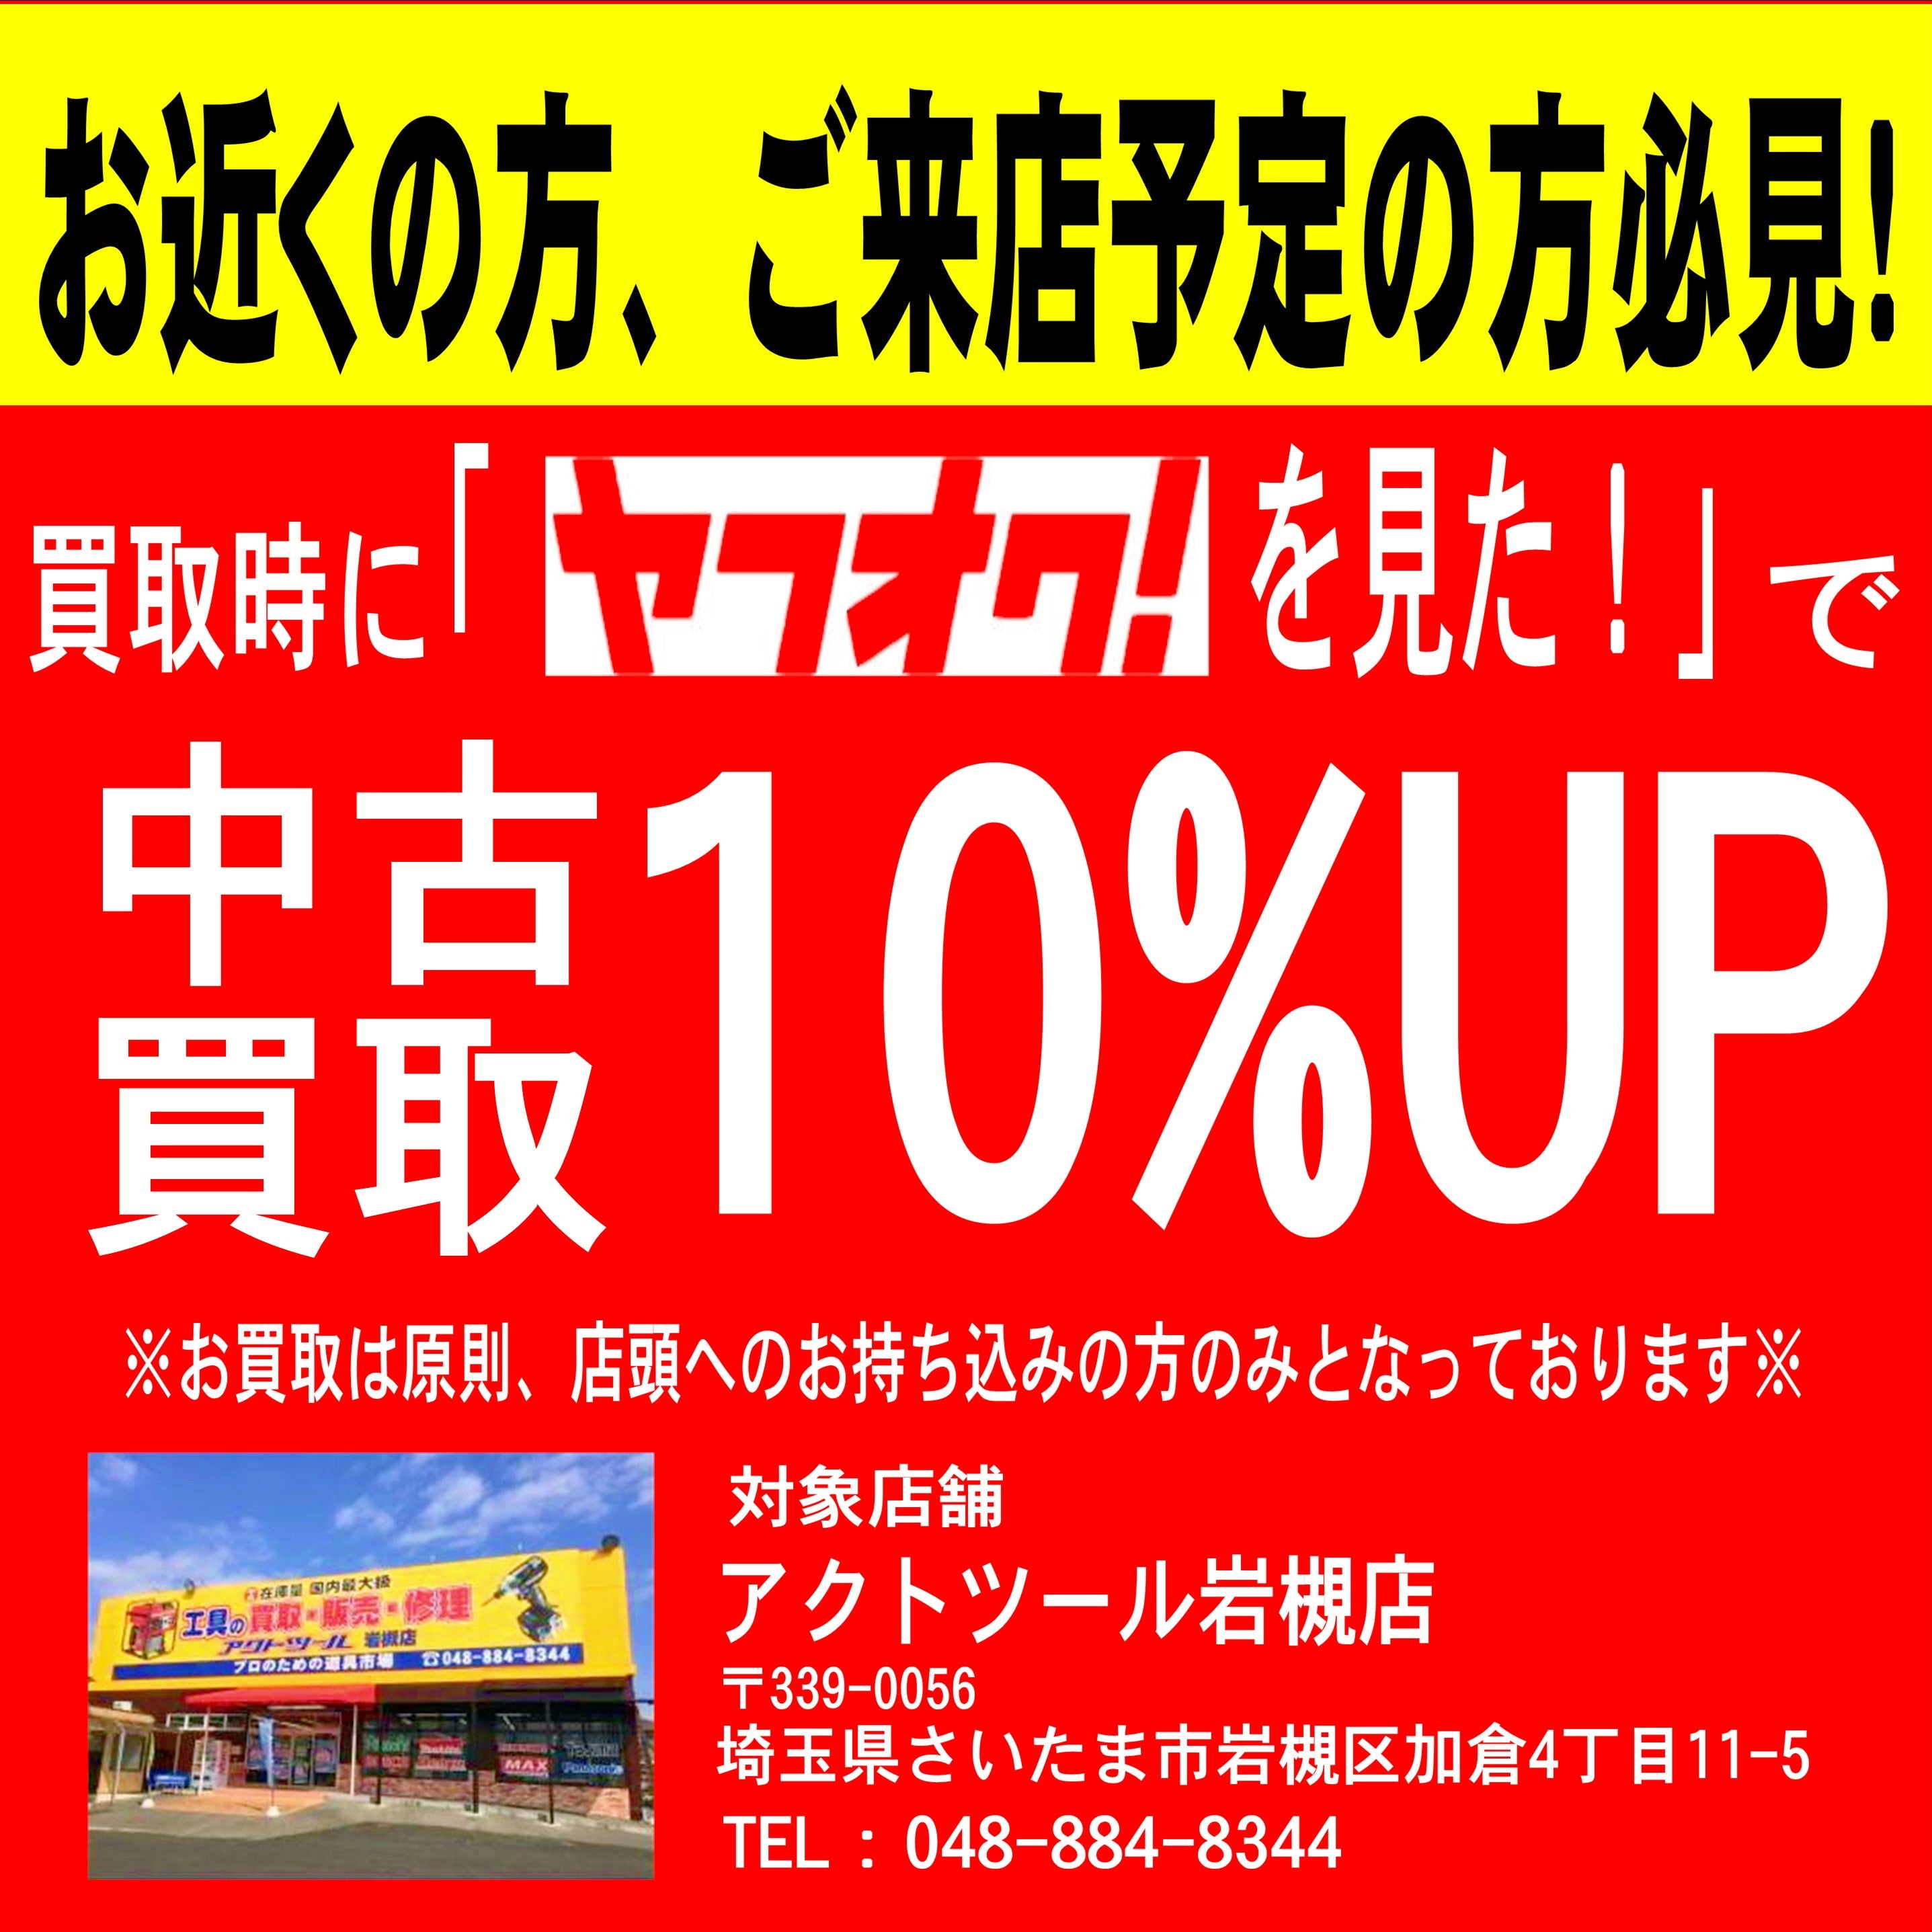 ☆マキタ(makita) ジグソー 4350FT【岩槻店】 アクトツールオンラインショップ